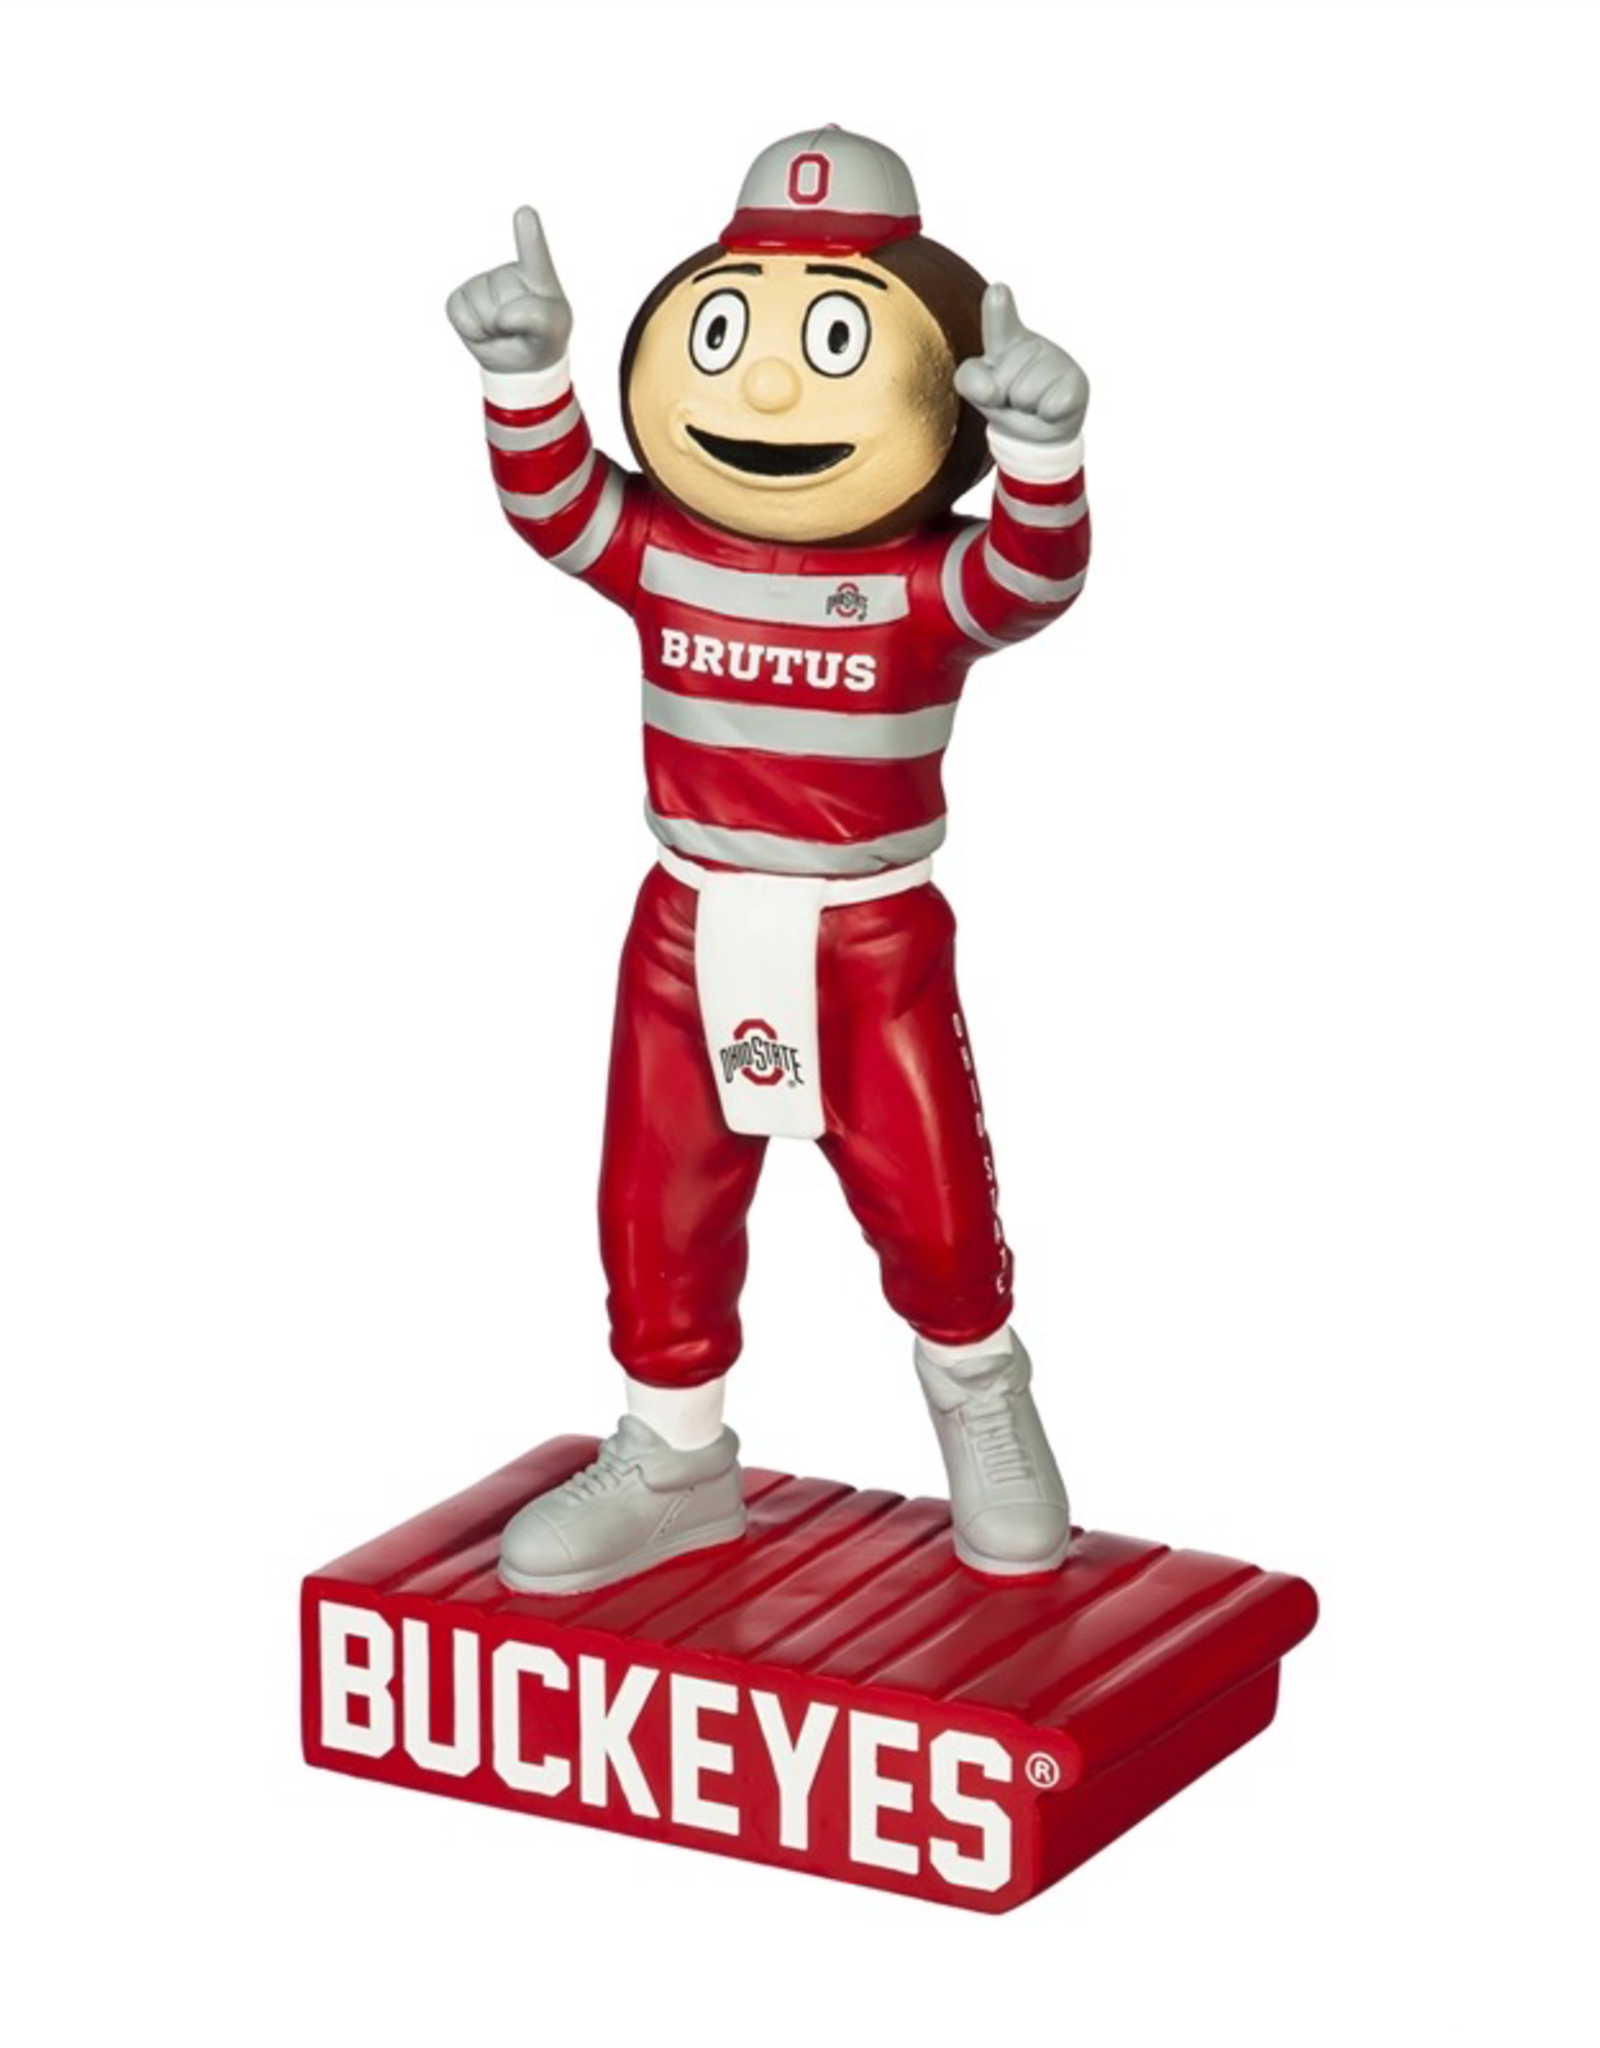 EVERGREEN Ohio State Buckeyes Mascot Statue